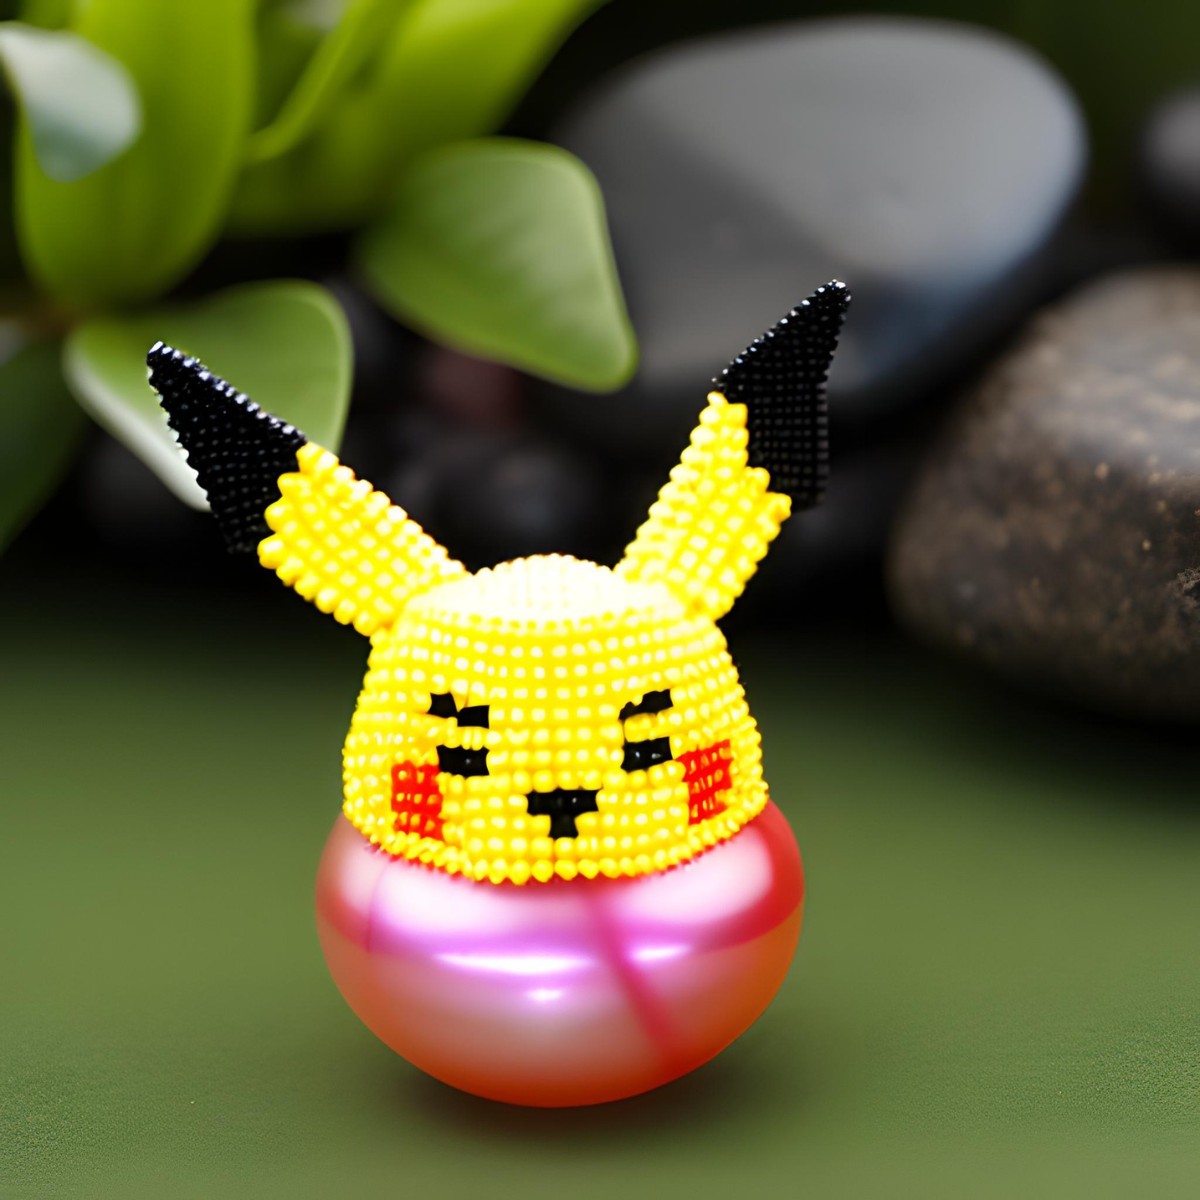 Starter Pokemon - Perler Beads/Fuse Beads/Pixel Art